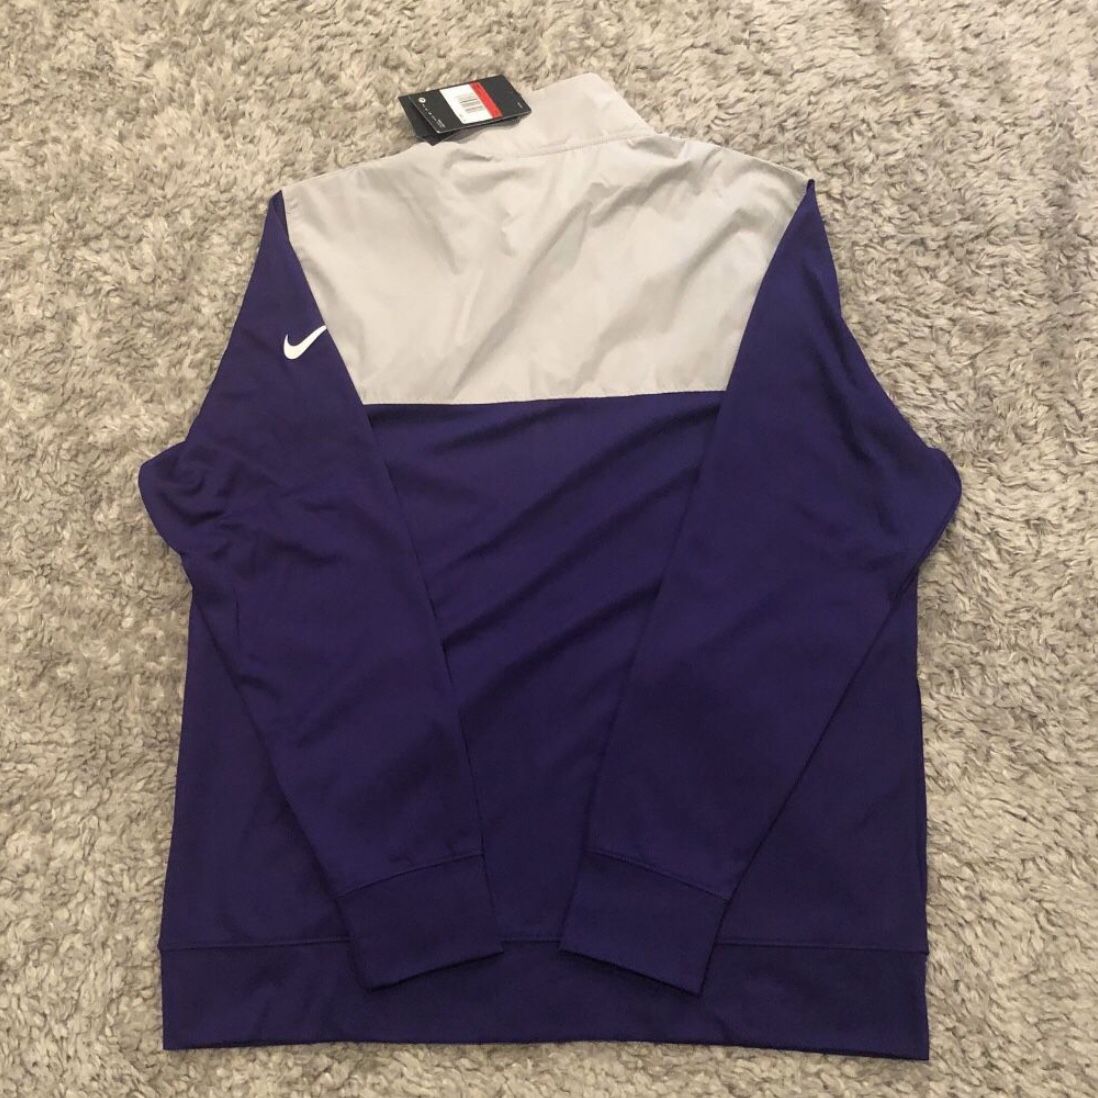 Nike Minnesota Vikings NFL Full Zip Jacket Men’s Size Large $90